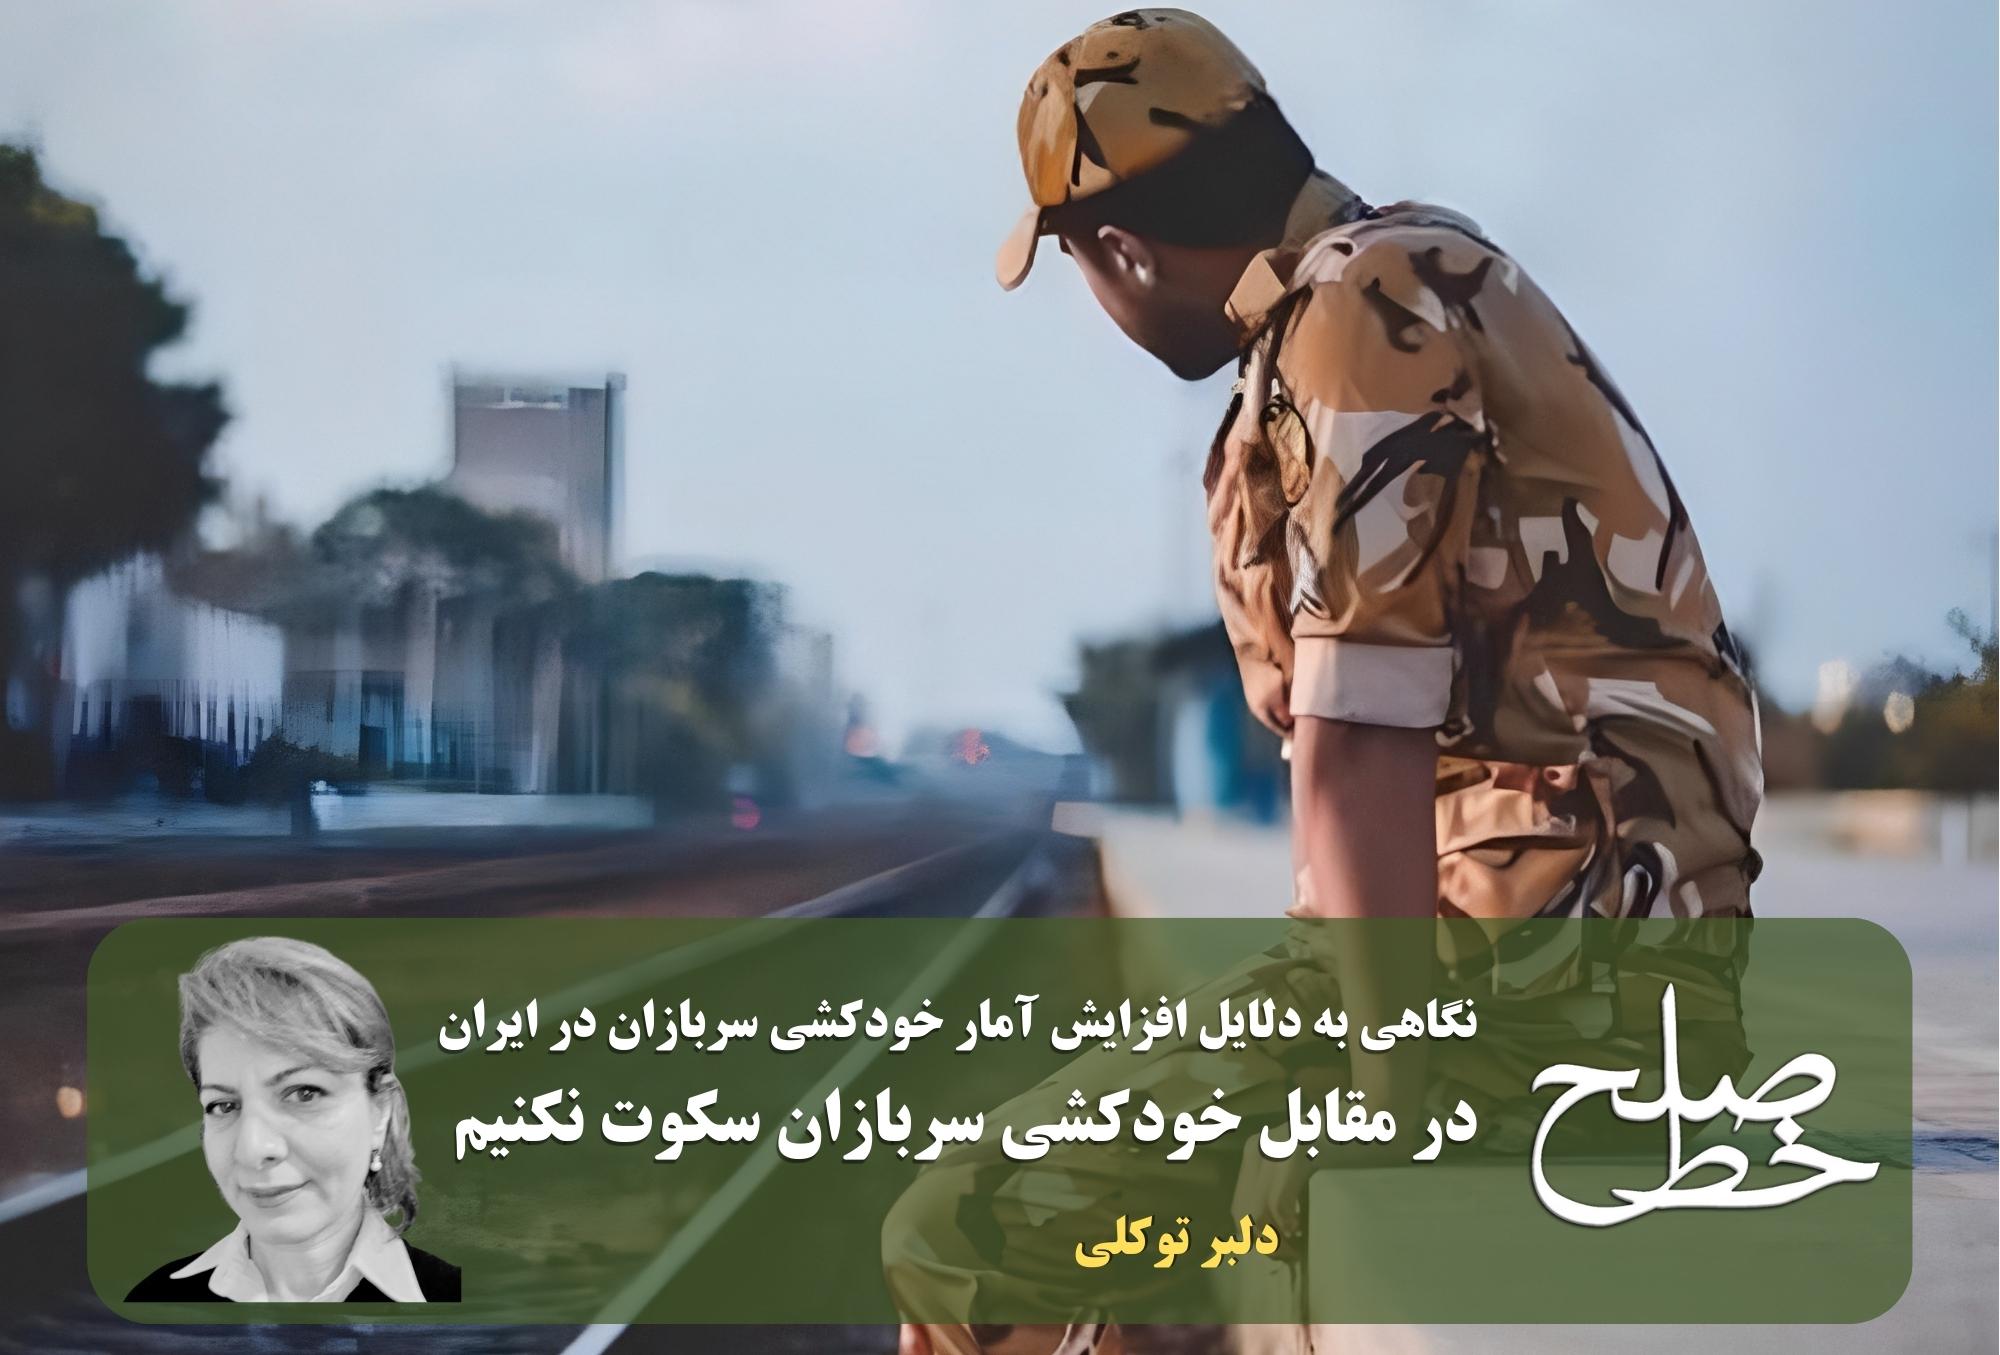 نگاهی به دلایل افزایش آمار خودکشی سربازان در ایران/ دلبر توکلی